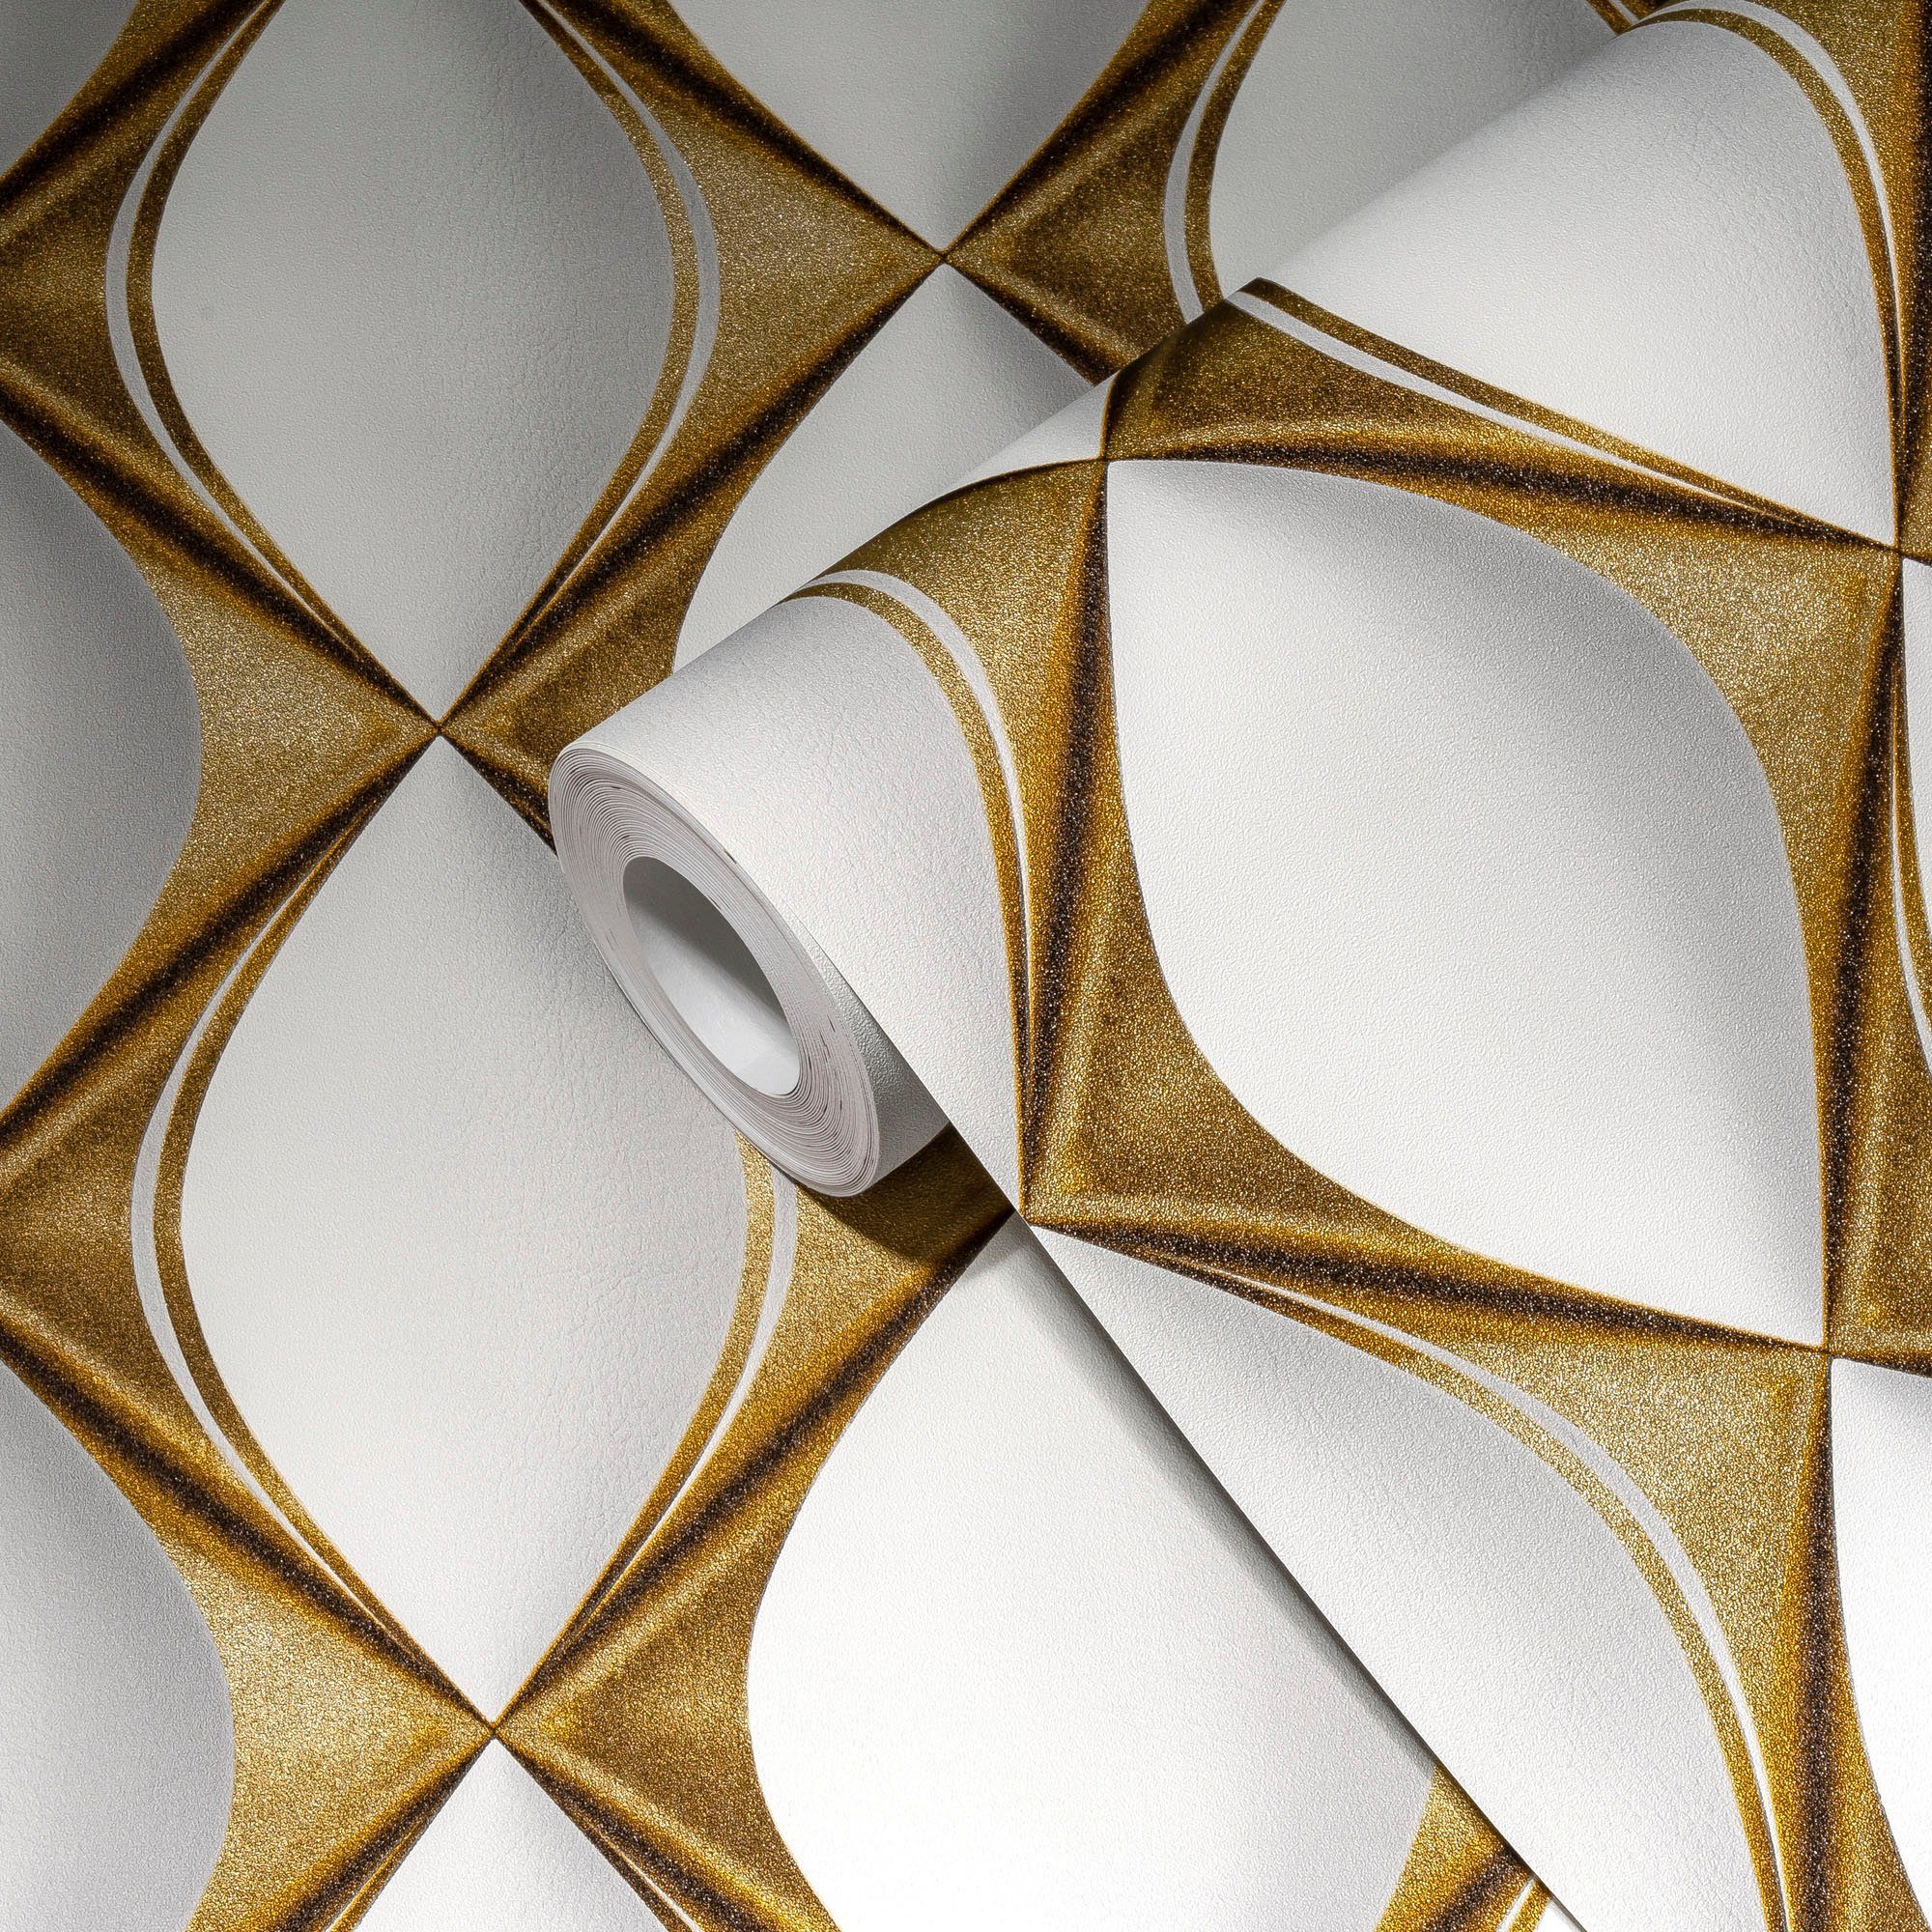 Vliestapete 3D Home strukturiert, walls Design My Tapete Spa, gold/weiß My living 3D-Optik, metallic, Effekt